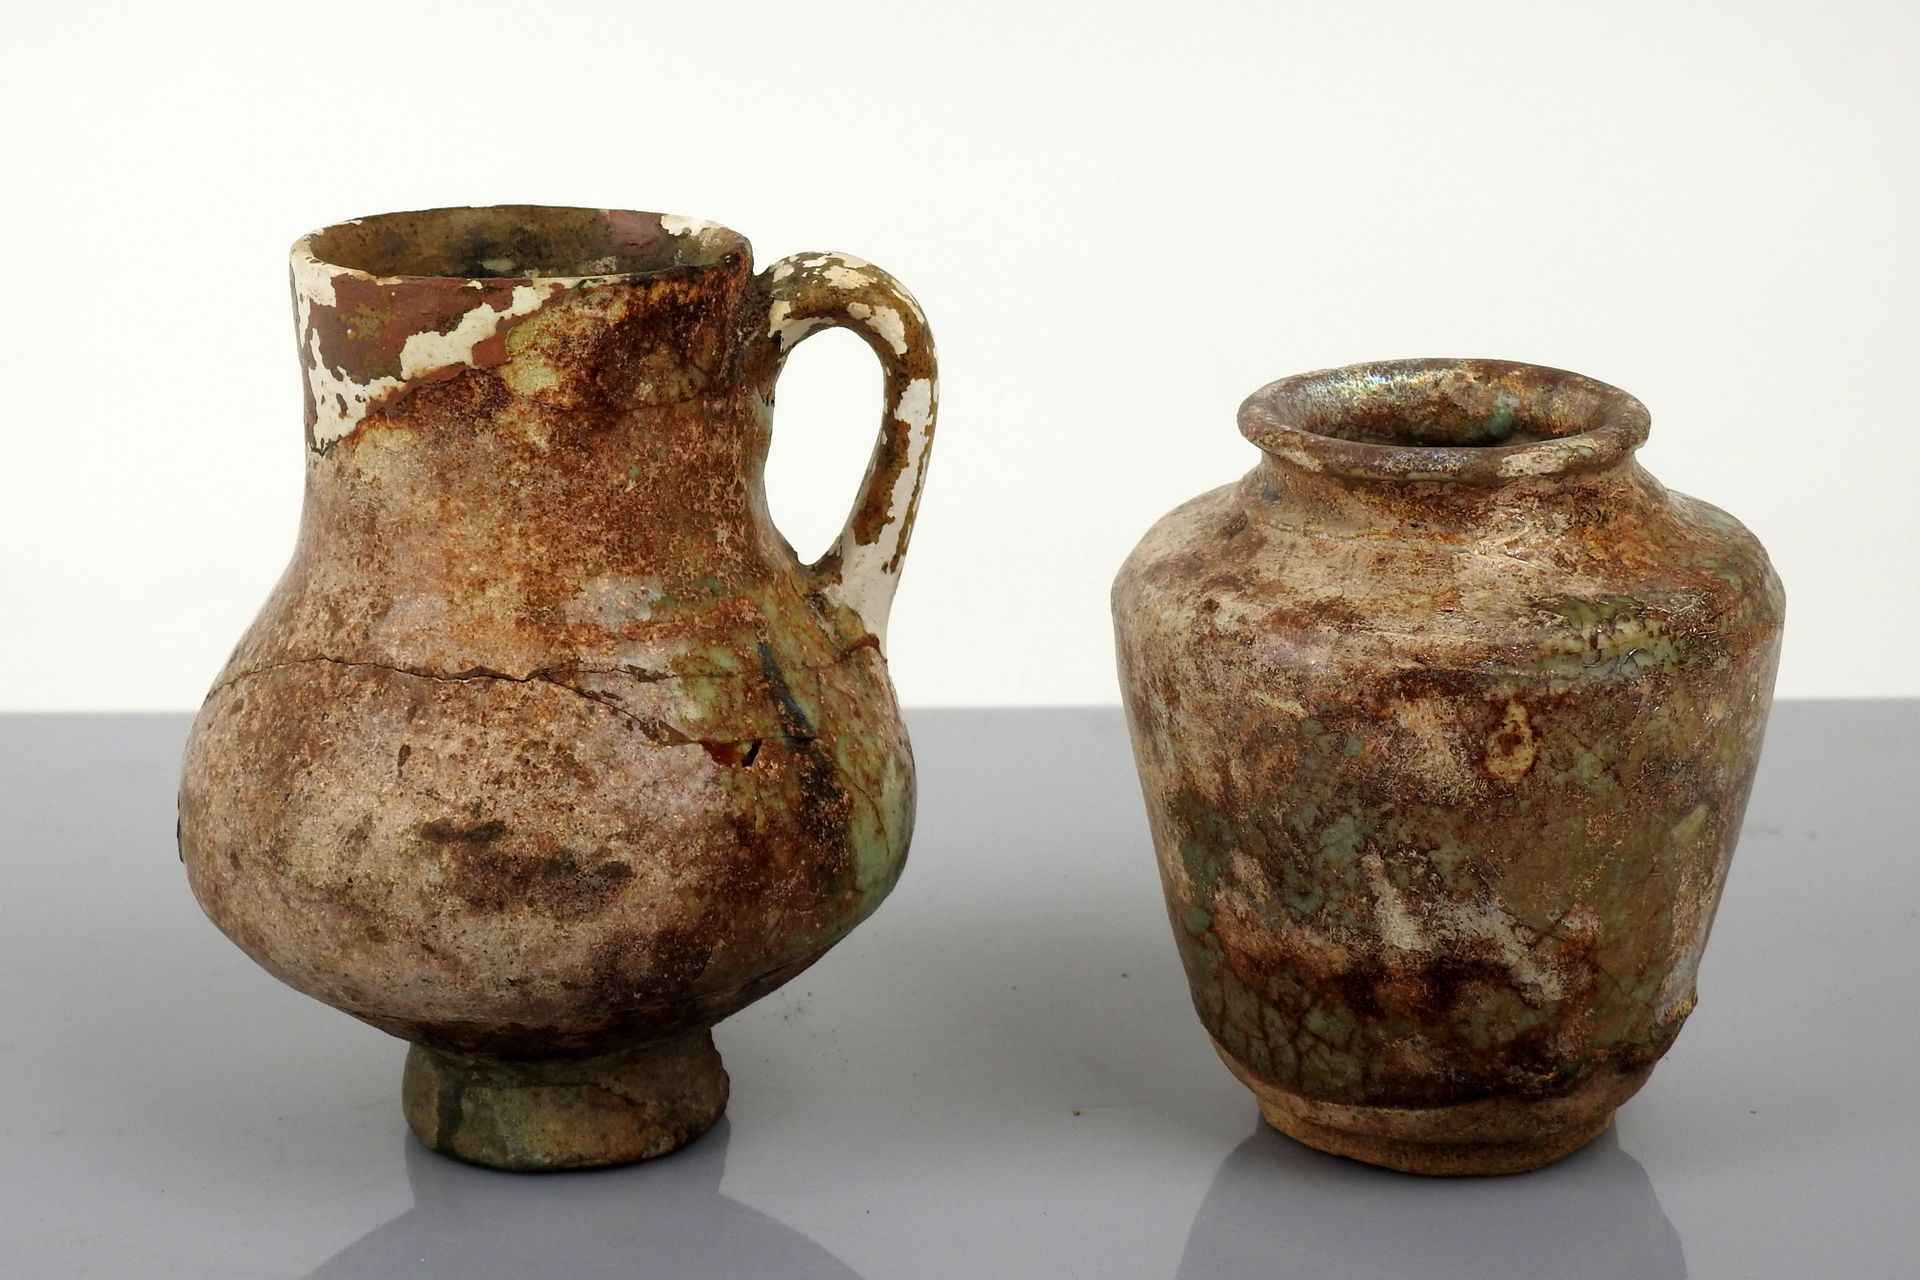 Null 浅绿色釉面的陶瓷罐和壶

陶器10和13厘米修复壶身

伊斯兰世界 公元X-XII世纪